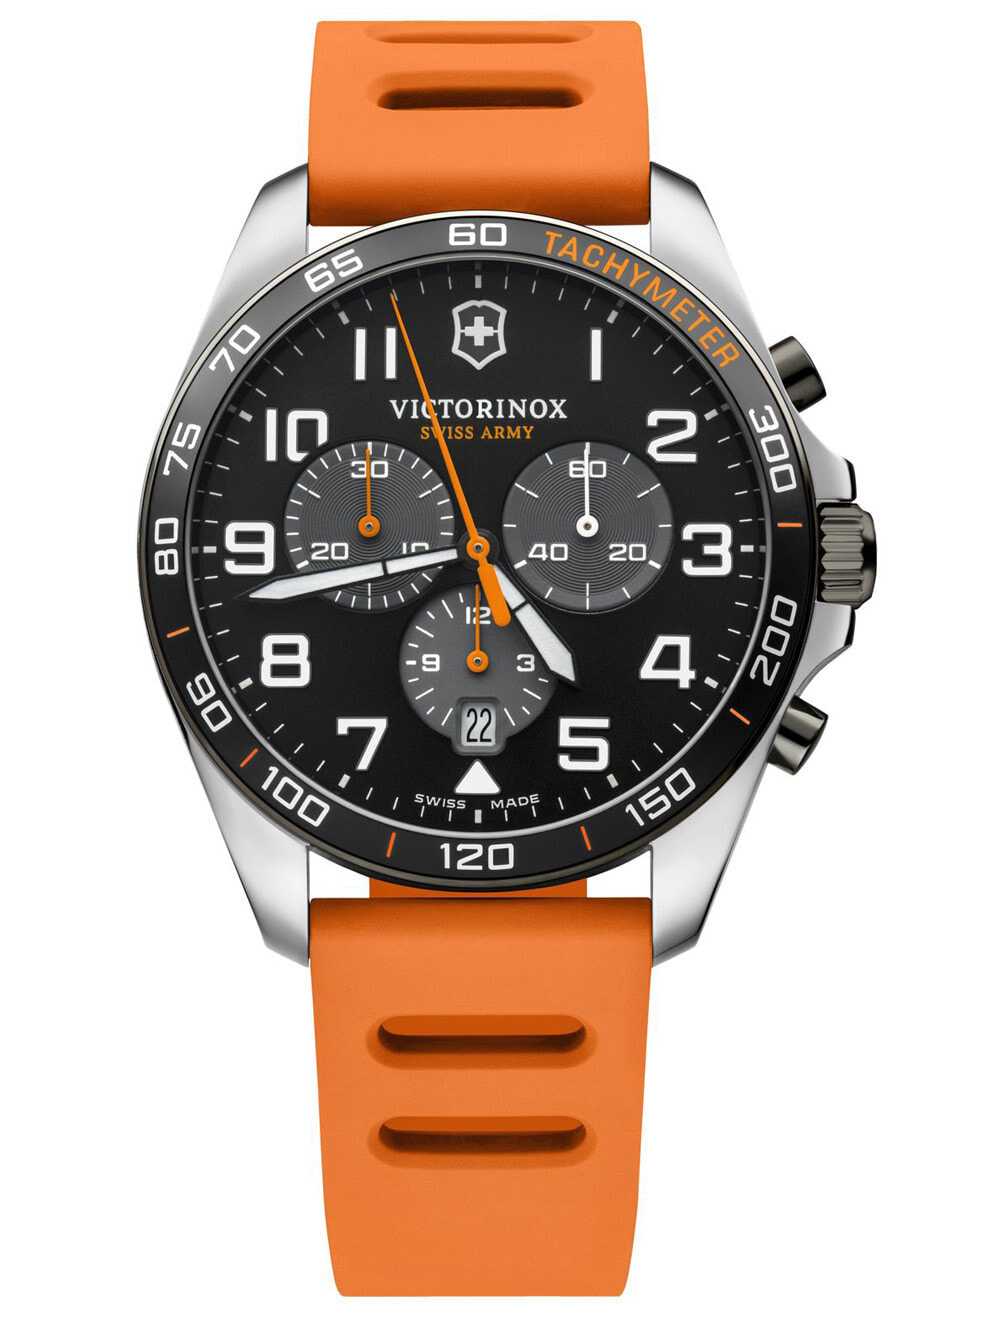 Мужские наручные часы с оранжевым силиконовым ремешком Victorinox 241893 Field Force Sport chrono 41mm 10ATM